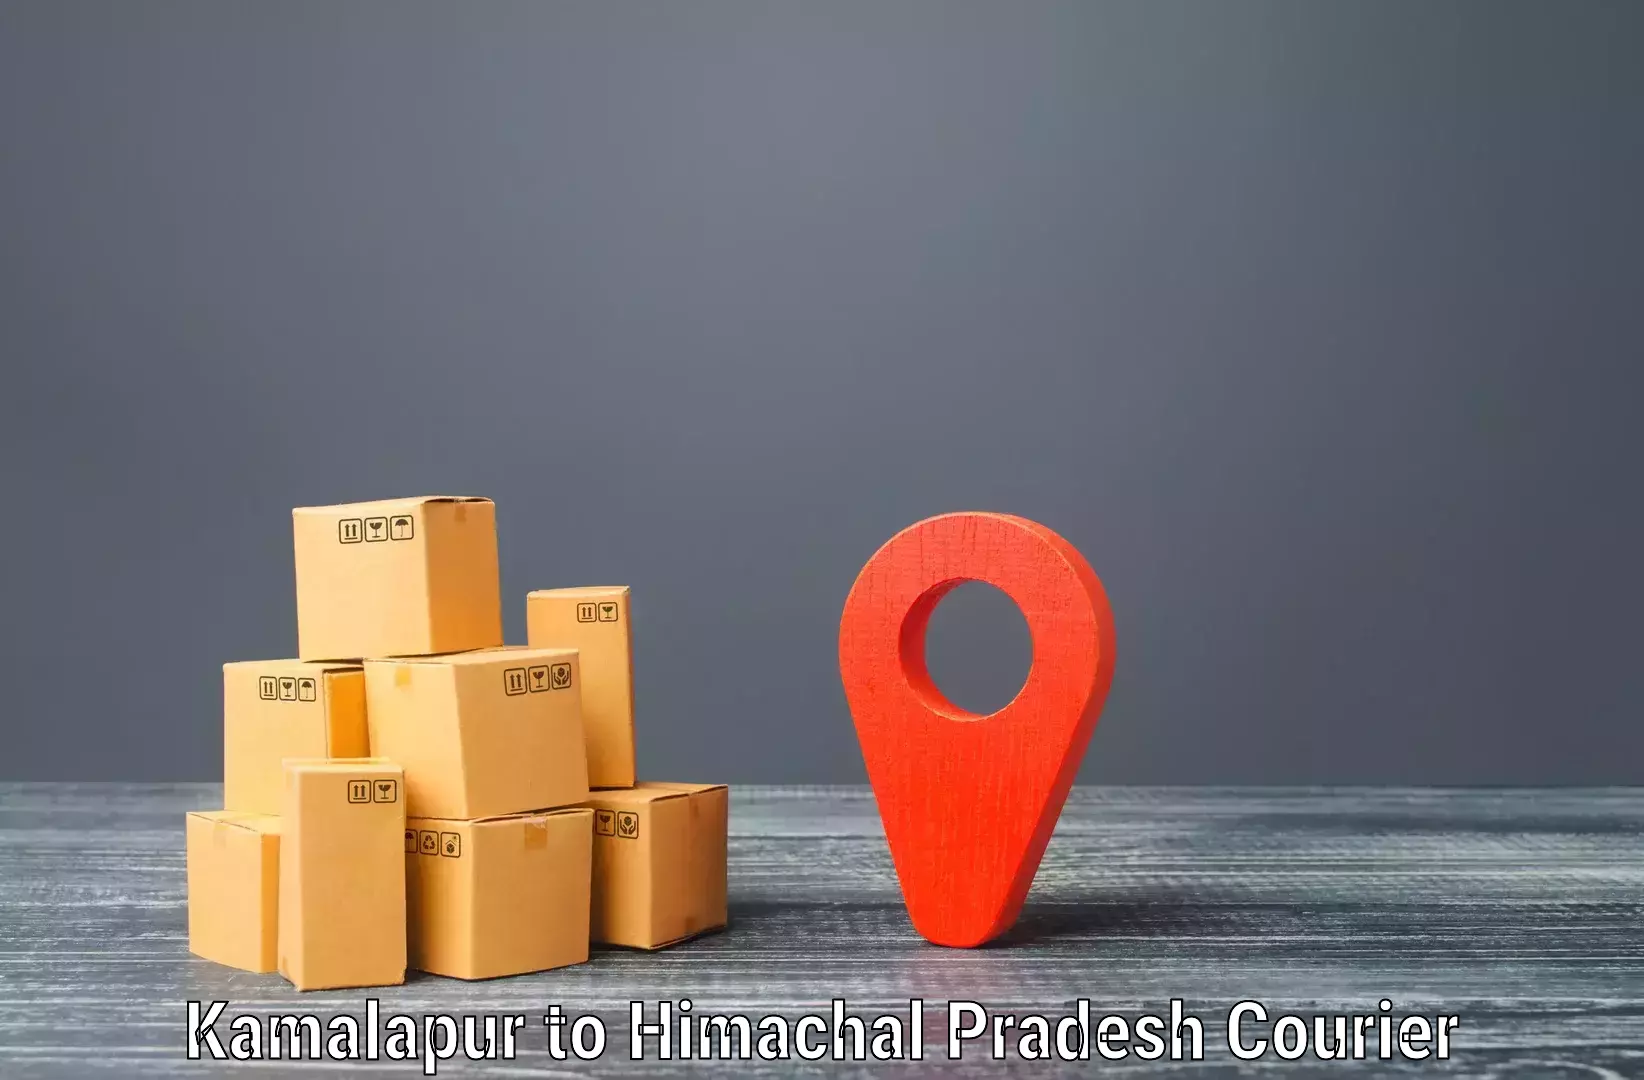 Global parcel delivery Kamalapur to Sandhol